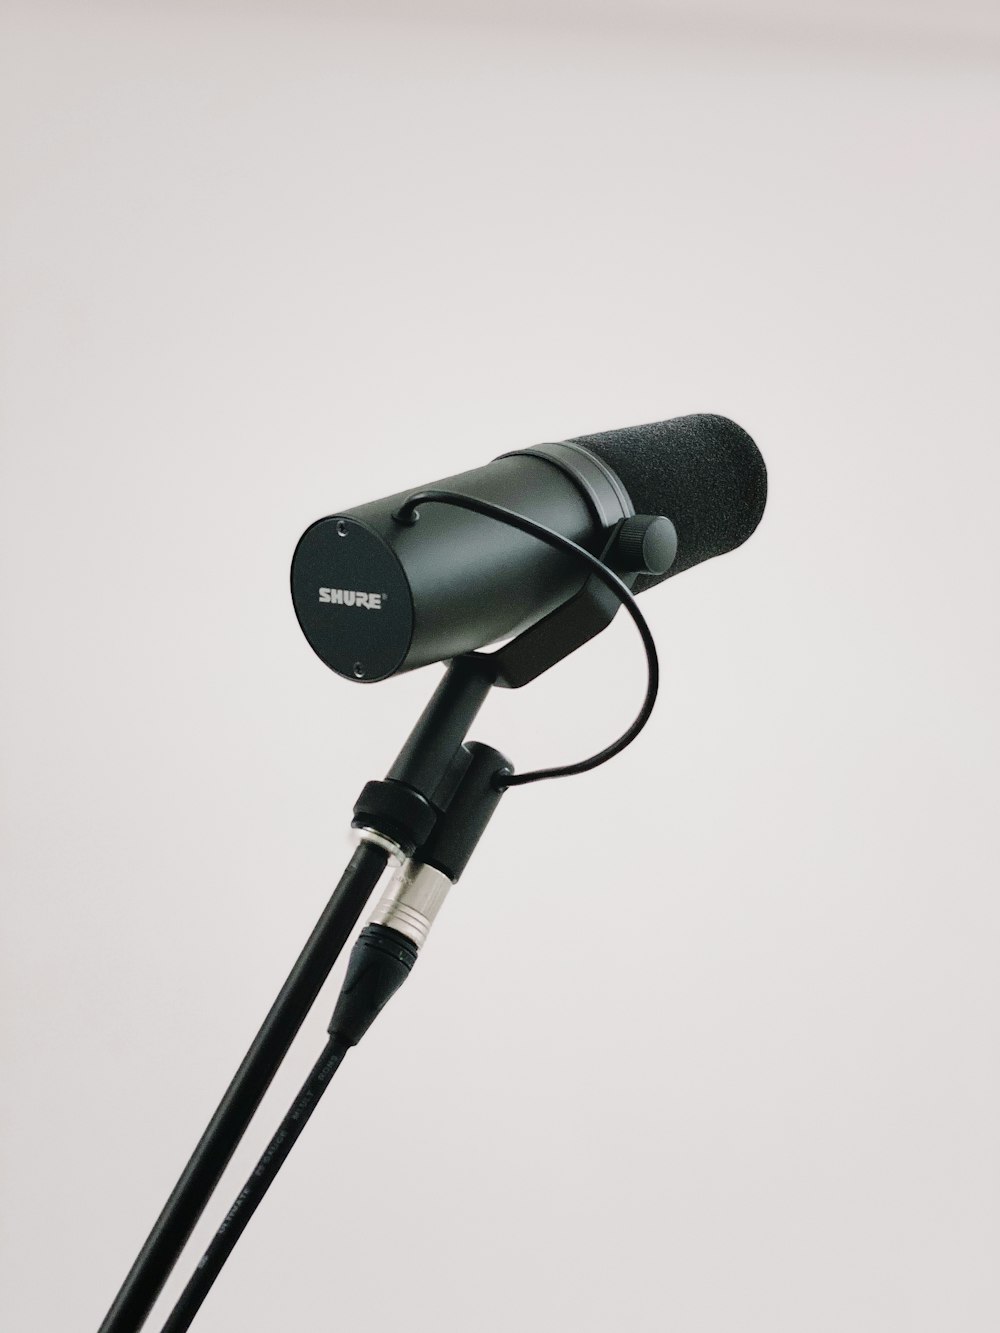 schwarzes Mikrofon mit Fuß auf weißem Hintergrund